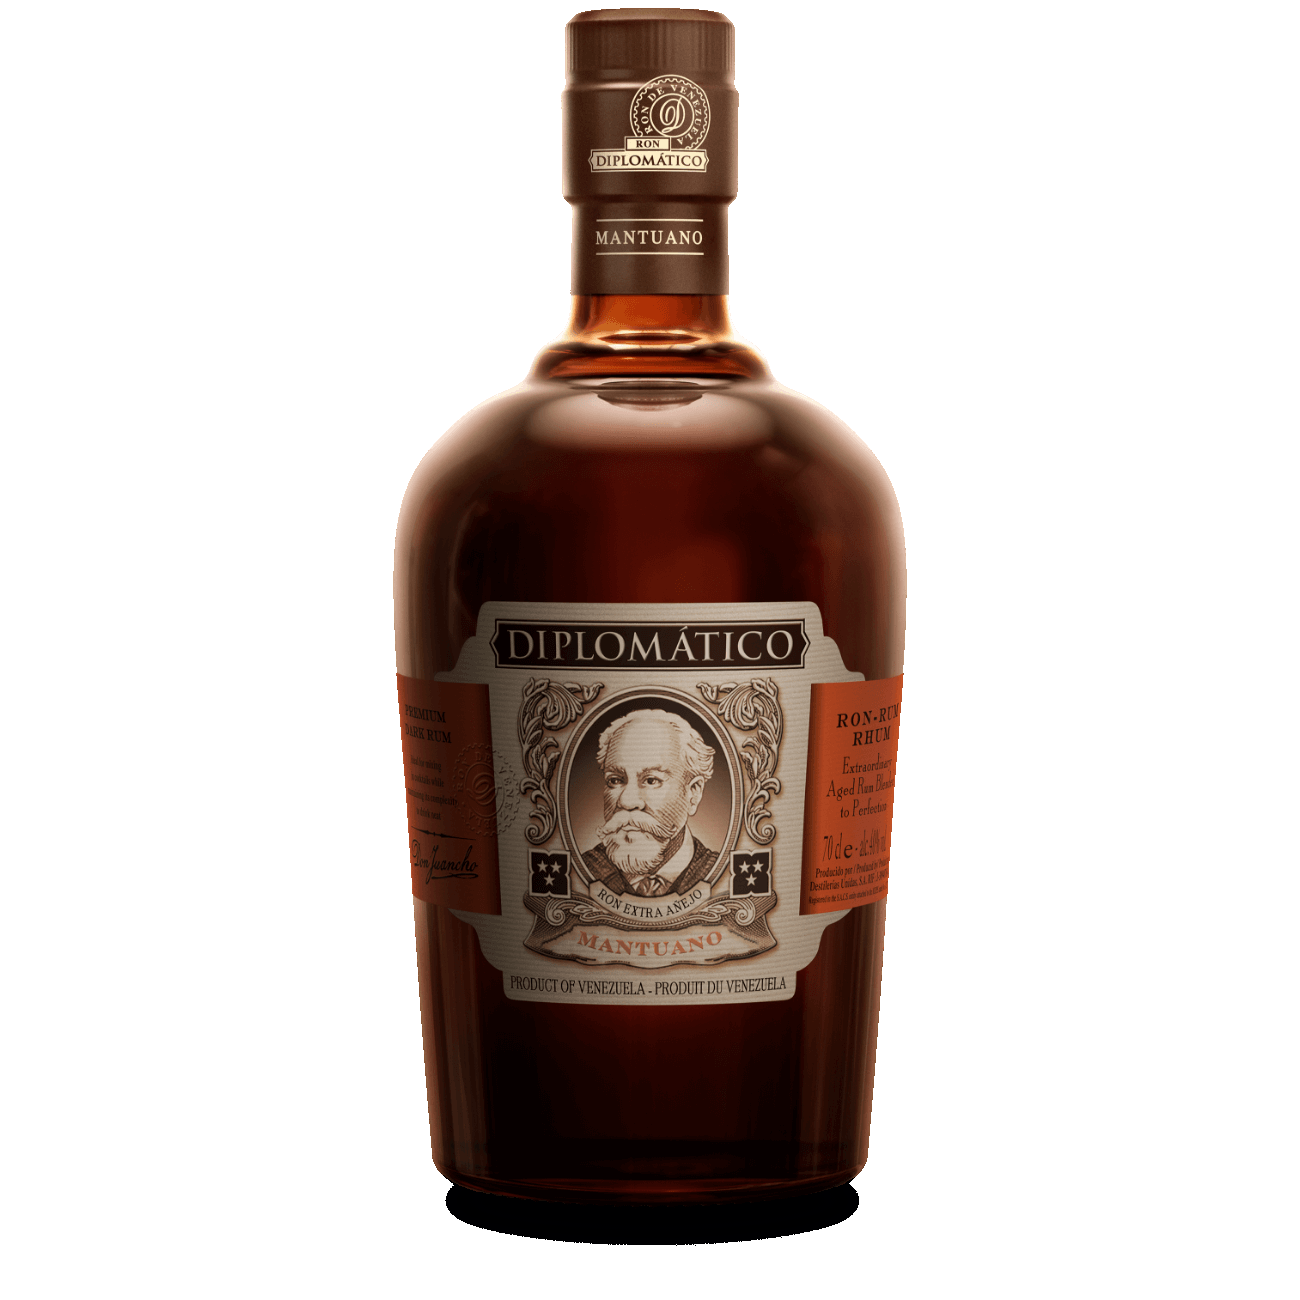 Diplomatico Mantuano Premium Dark Rum 750ml